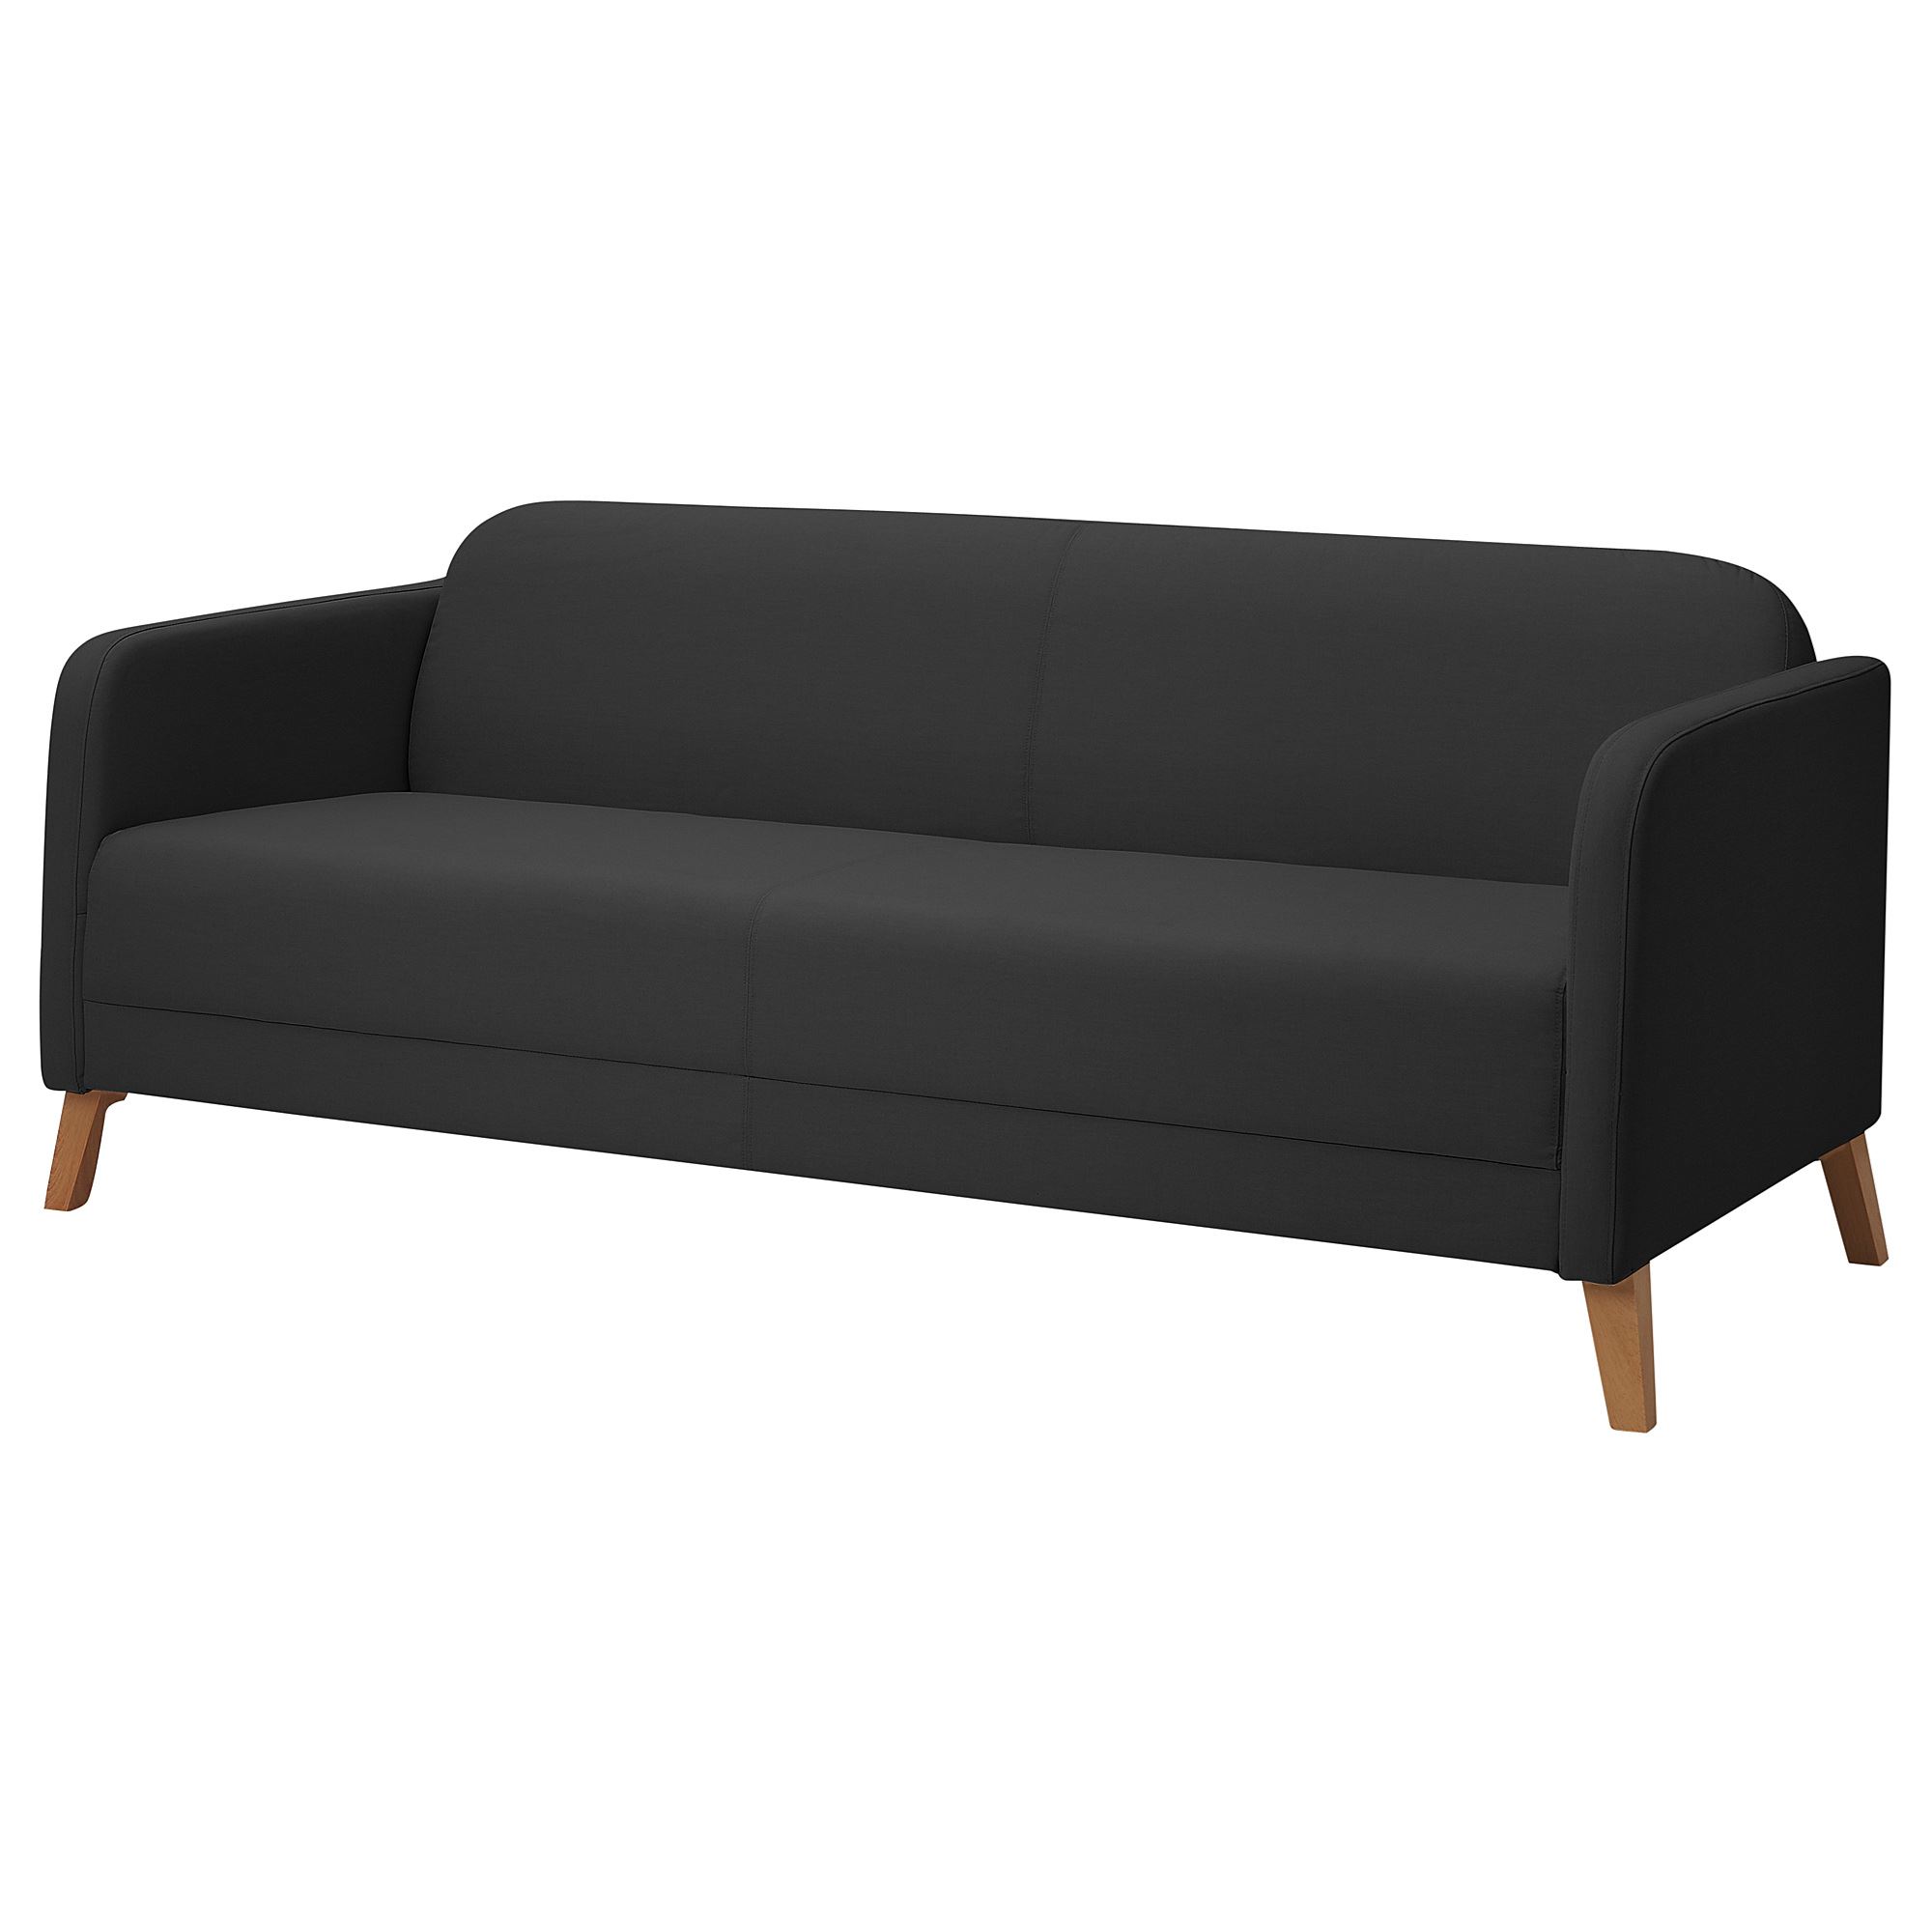 LINANAS vissle koyu gri 3lü kanepe | IKEA